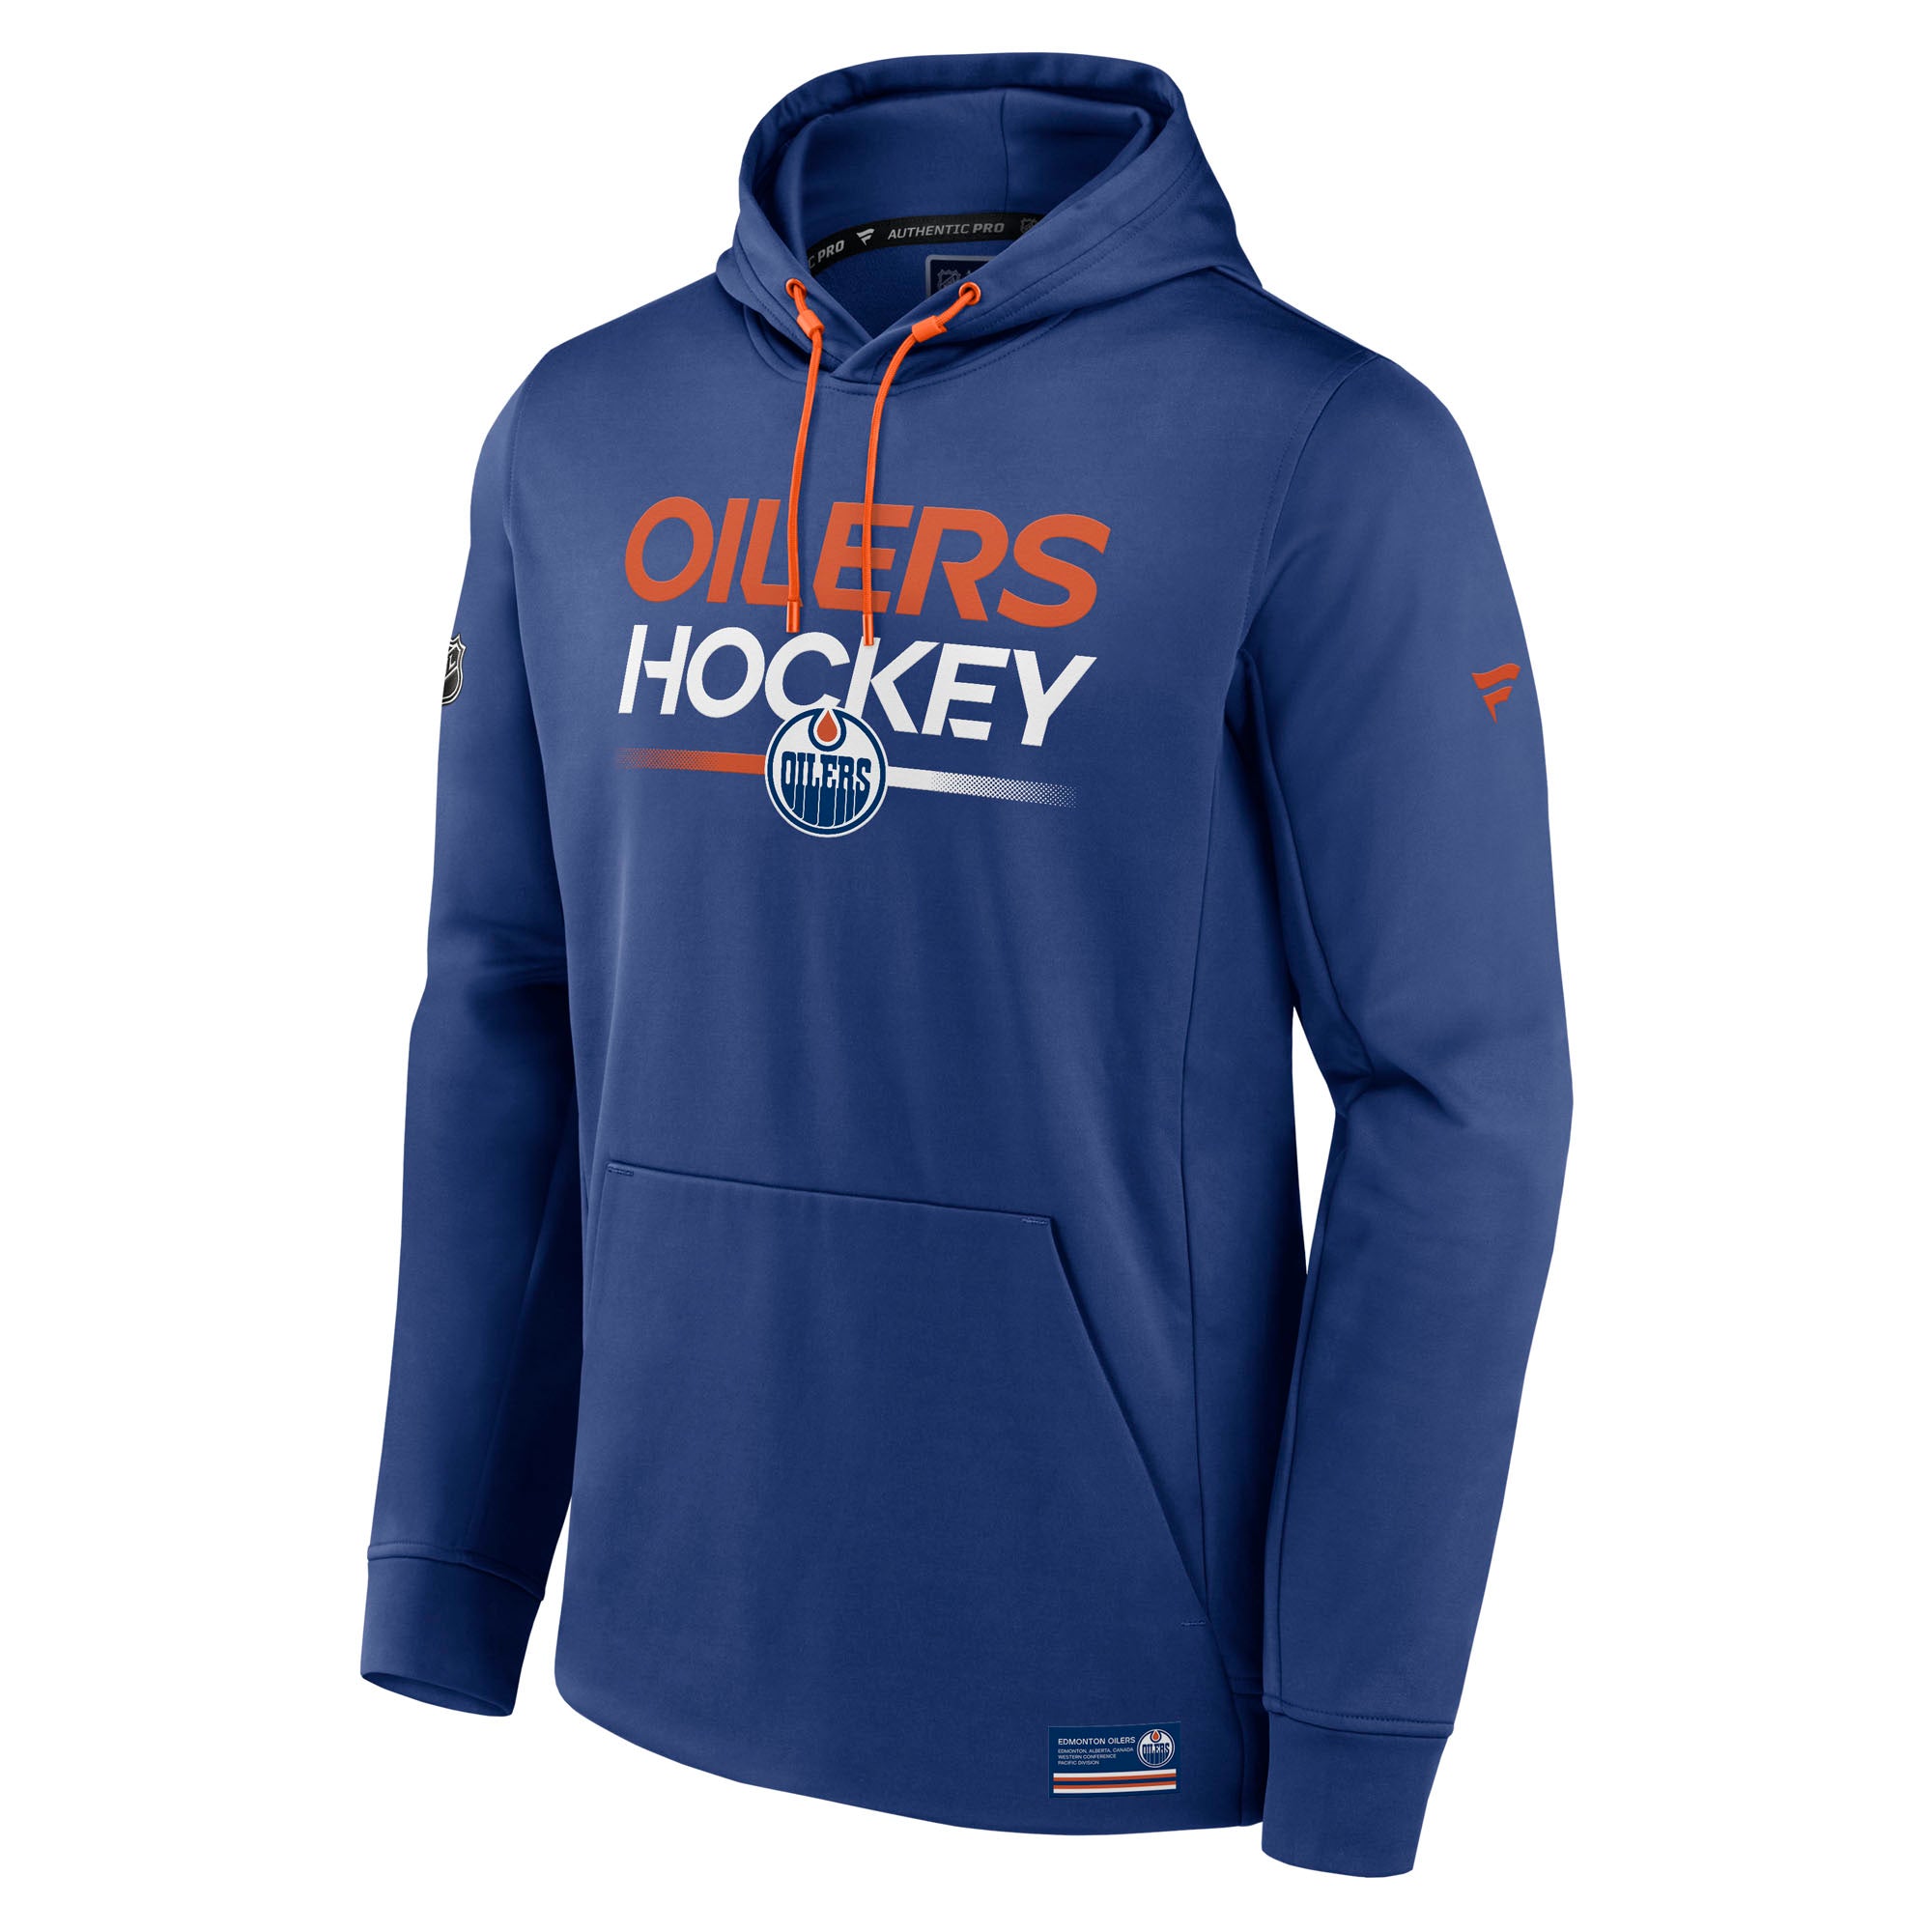 Edmonton Oilers Turtle Island Logo shirt, hoodie, sweatshirt and